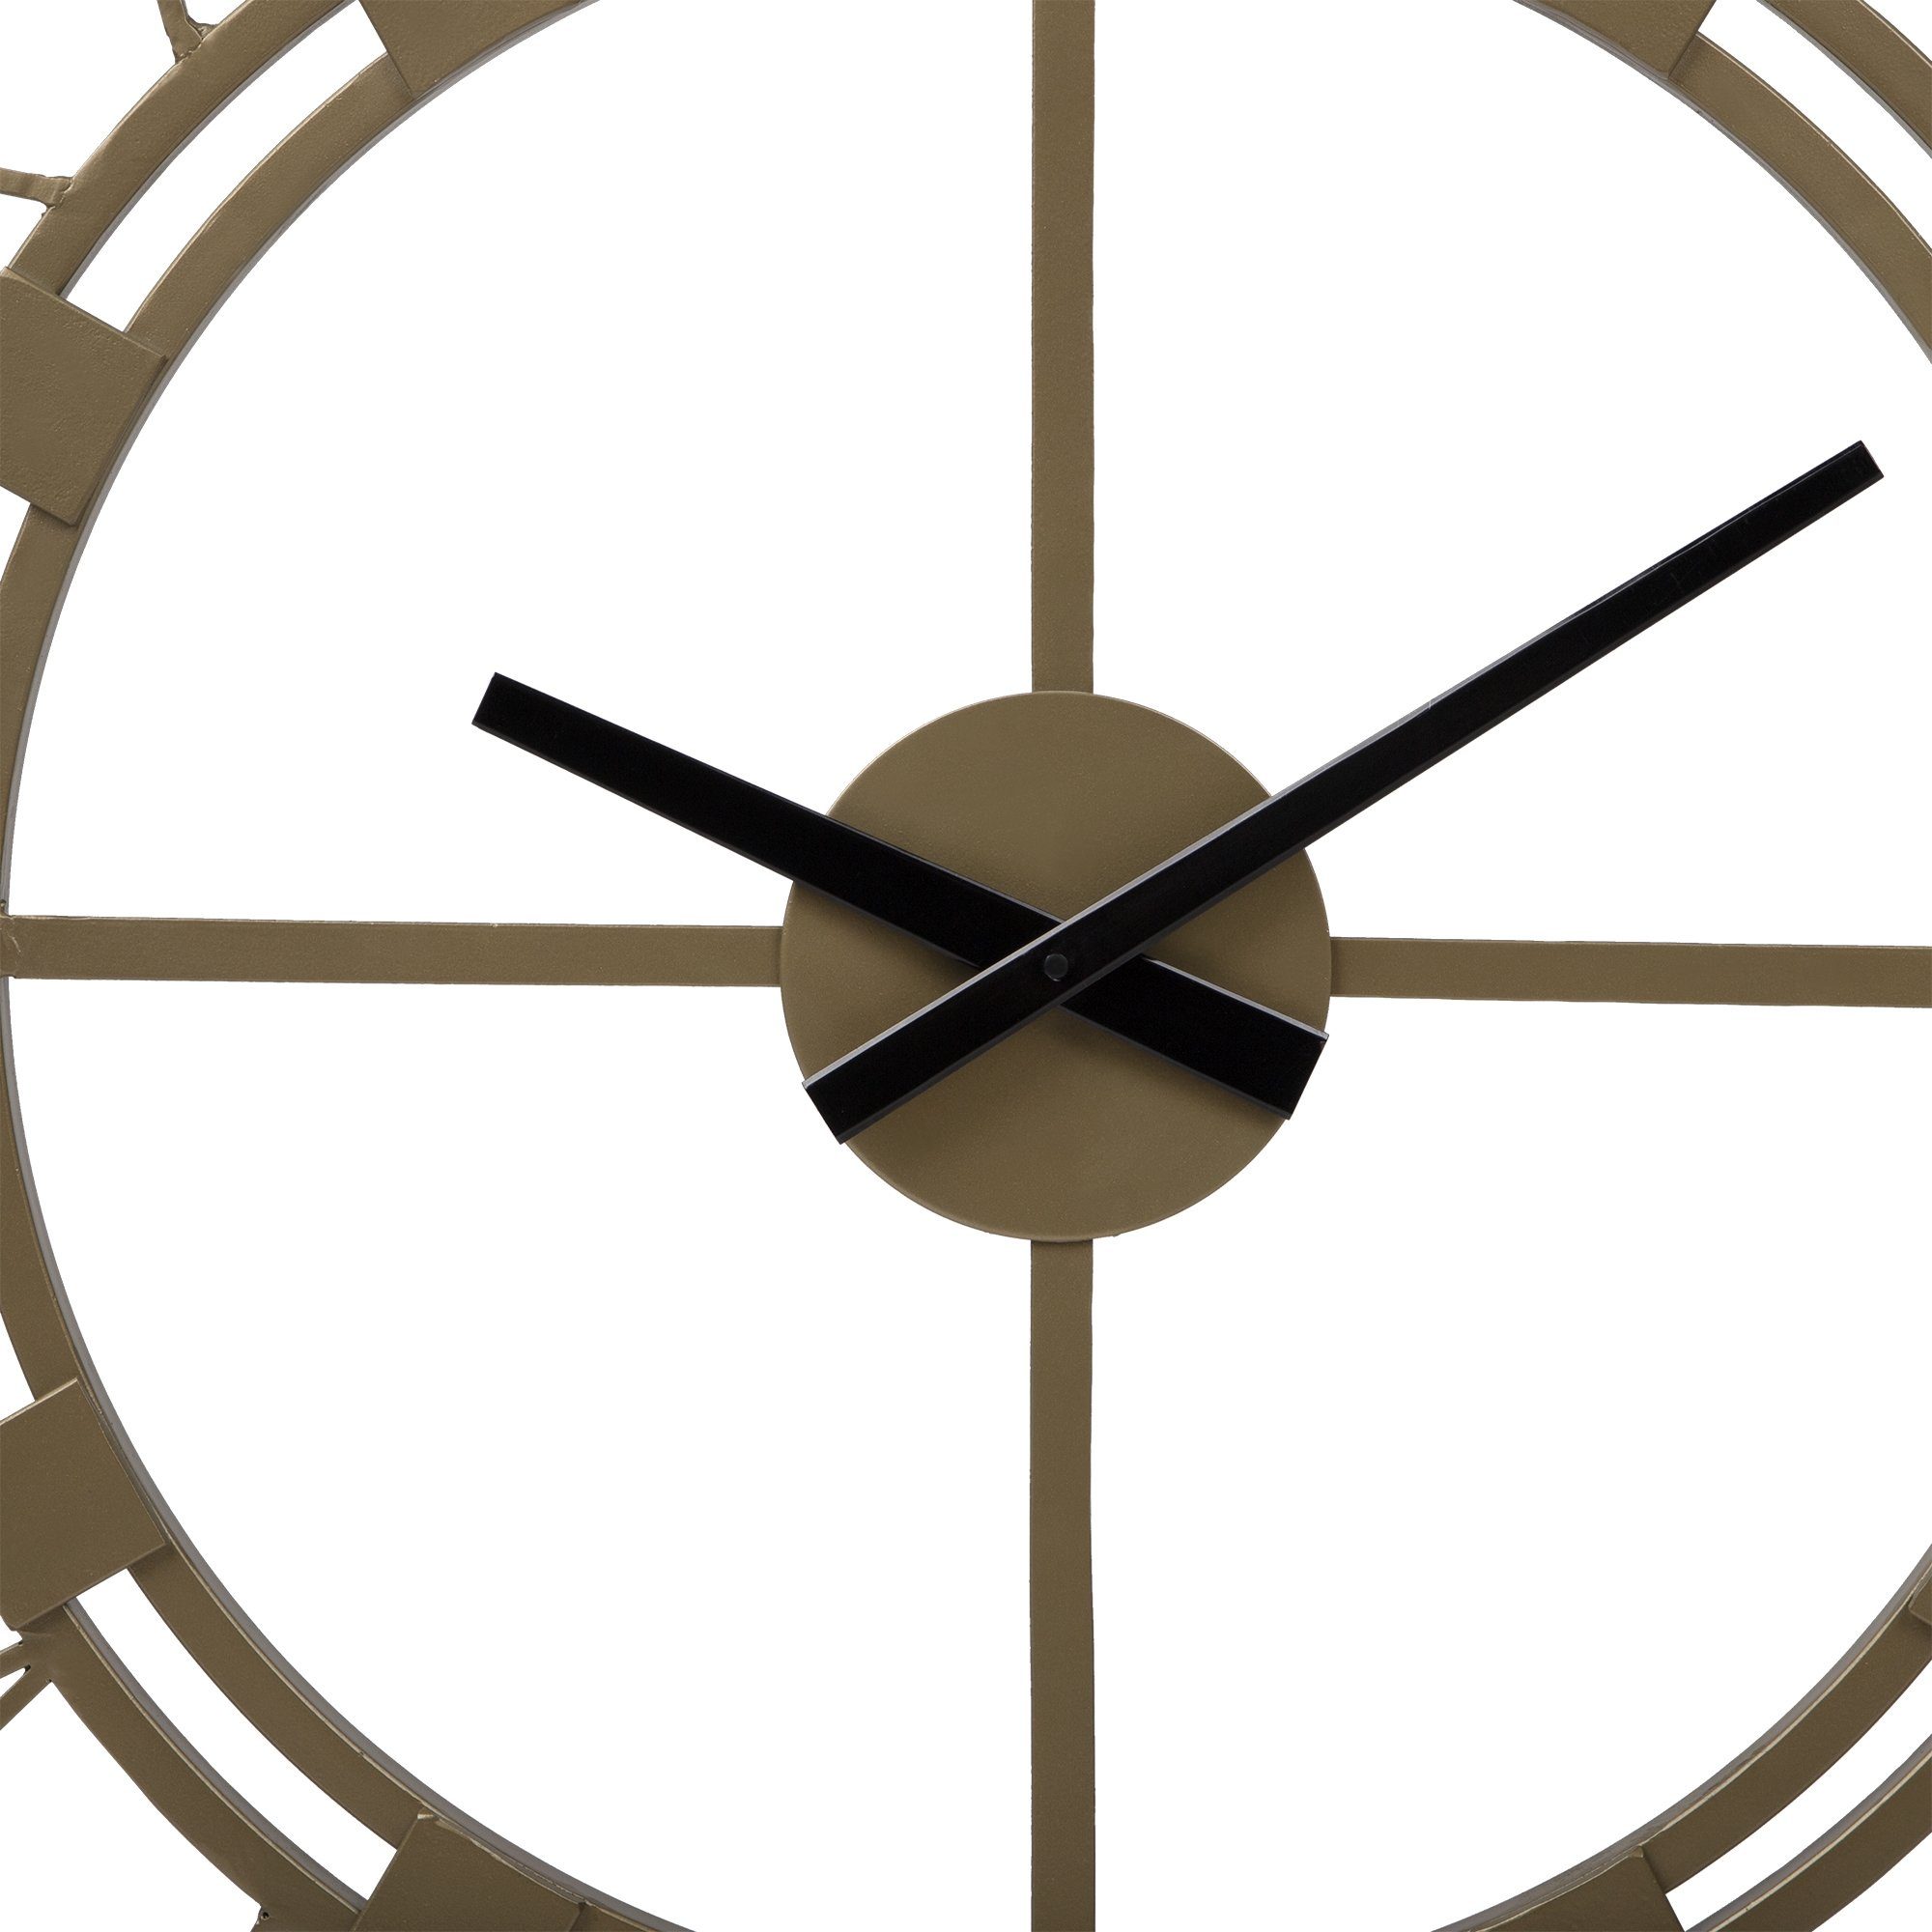 Unikat Uhr Dekorative Dekouhr (Altgold Vintage-Stil) Wanduhr Stockholm im Eisen Ø85cm WOMO-DESIGN rund handgefertigt Design Uhr